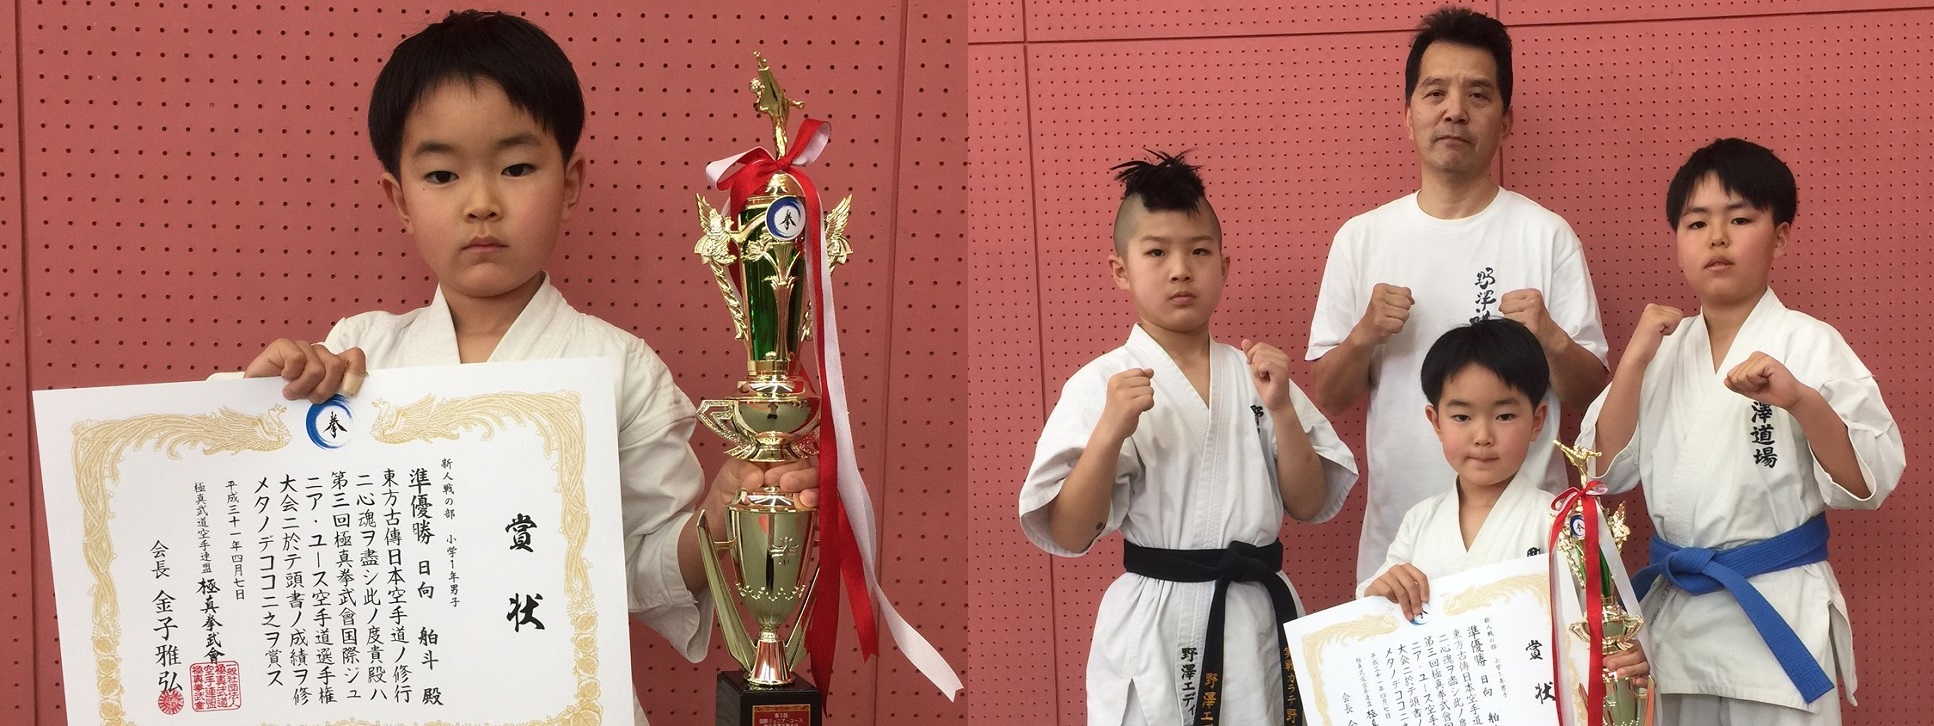 極真拳武會ジュニアユース大会ASJJF/東京国際チャンピオンシップ